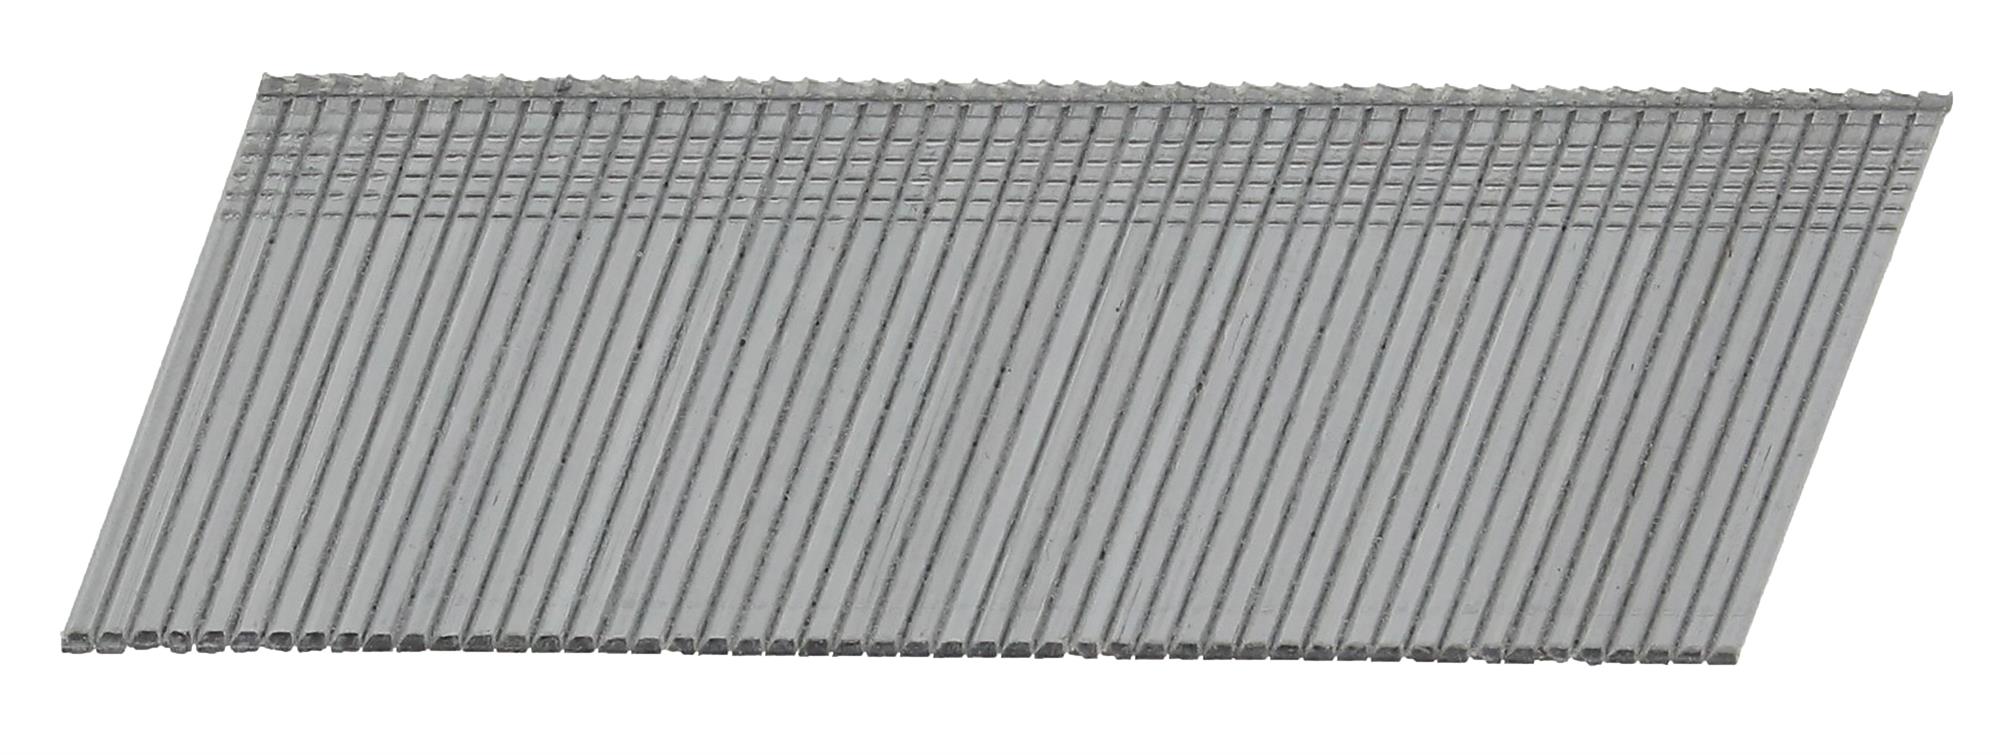 Hřebíky FeZn Paslode AF16 20° hladké 1,6×45 mm 2 000 ks